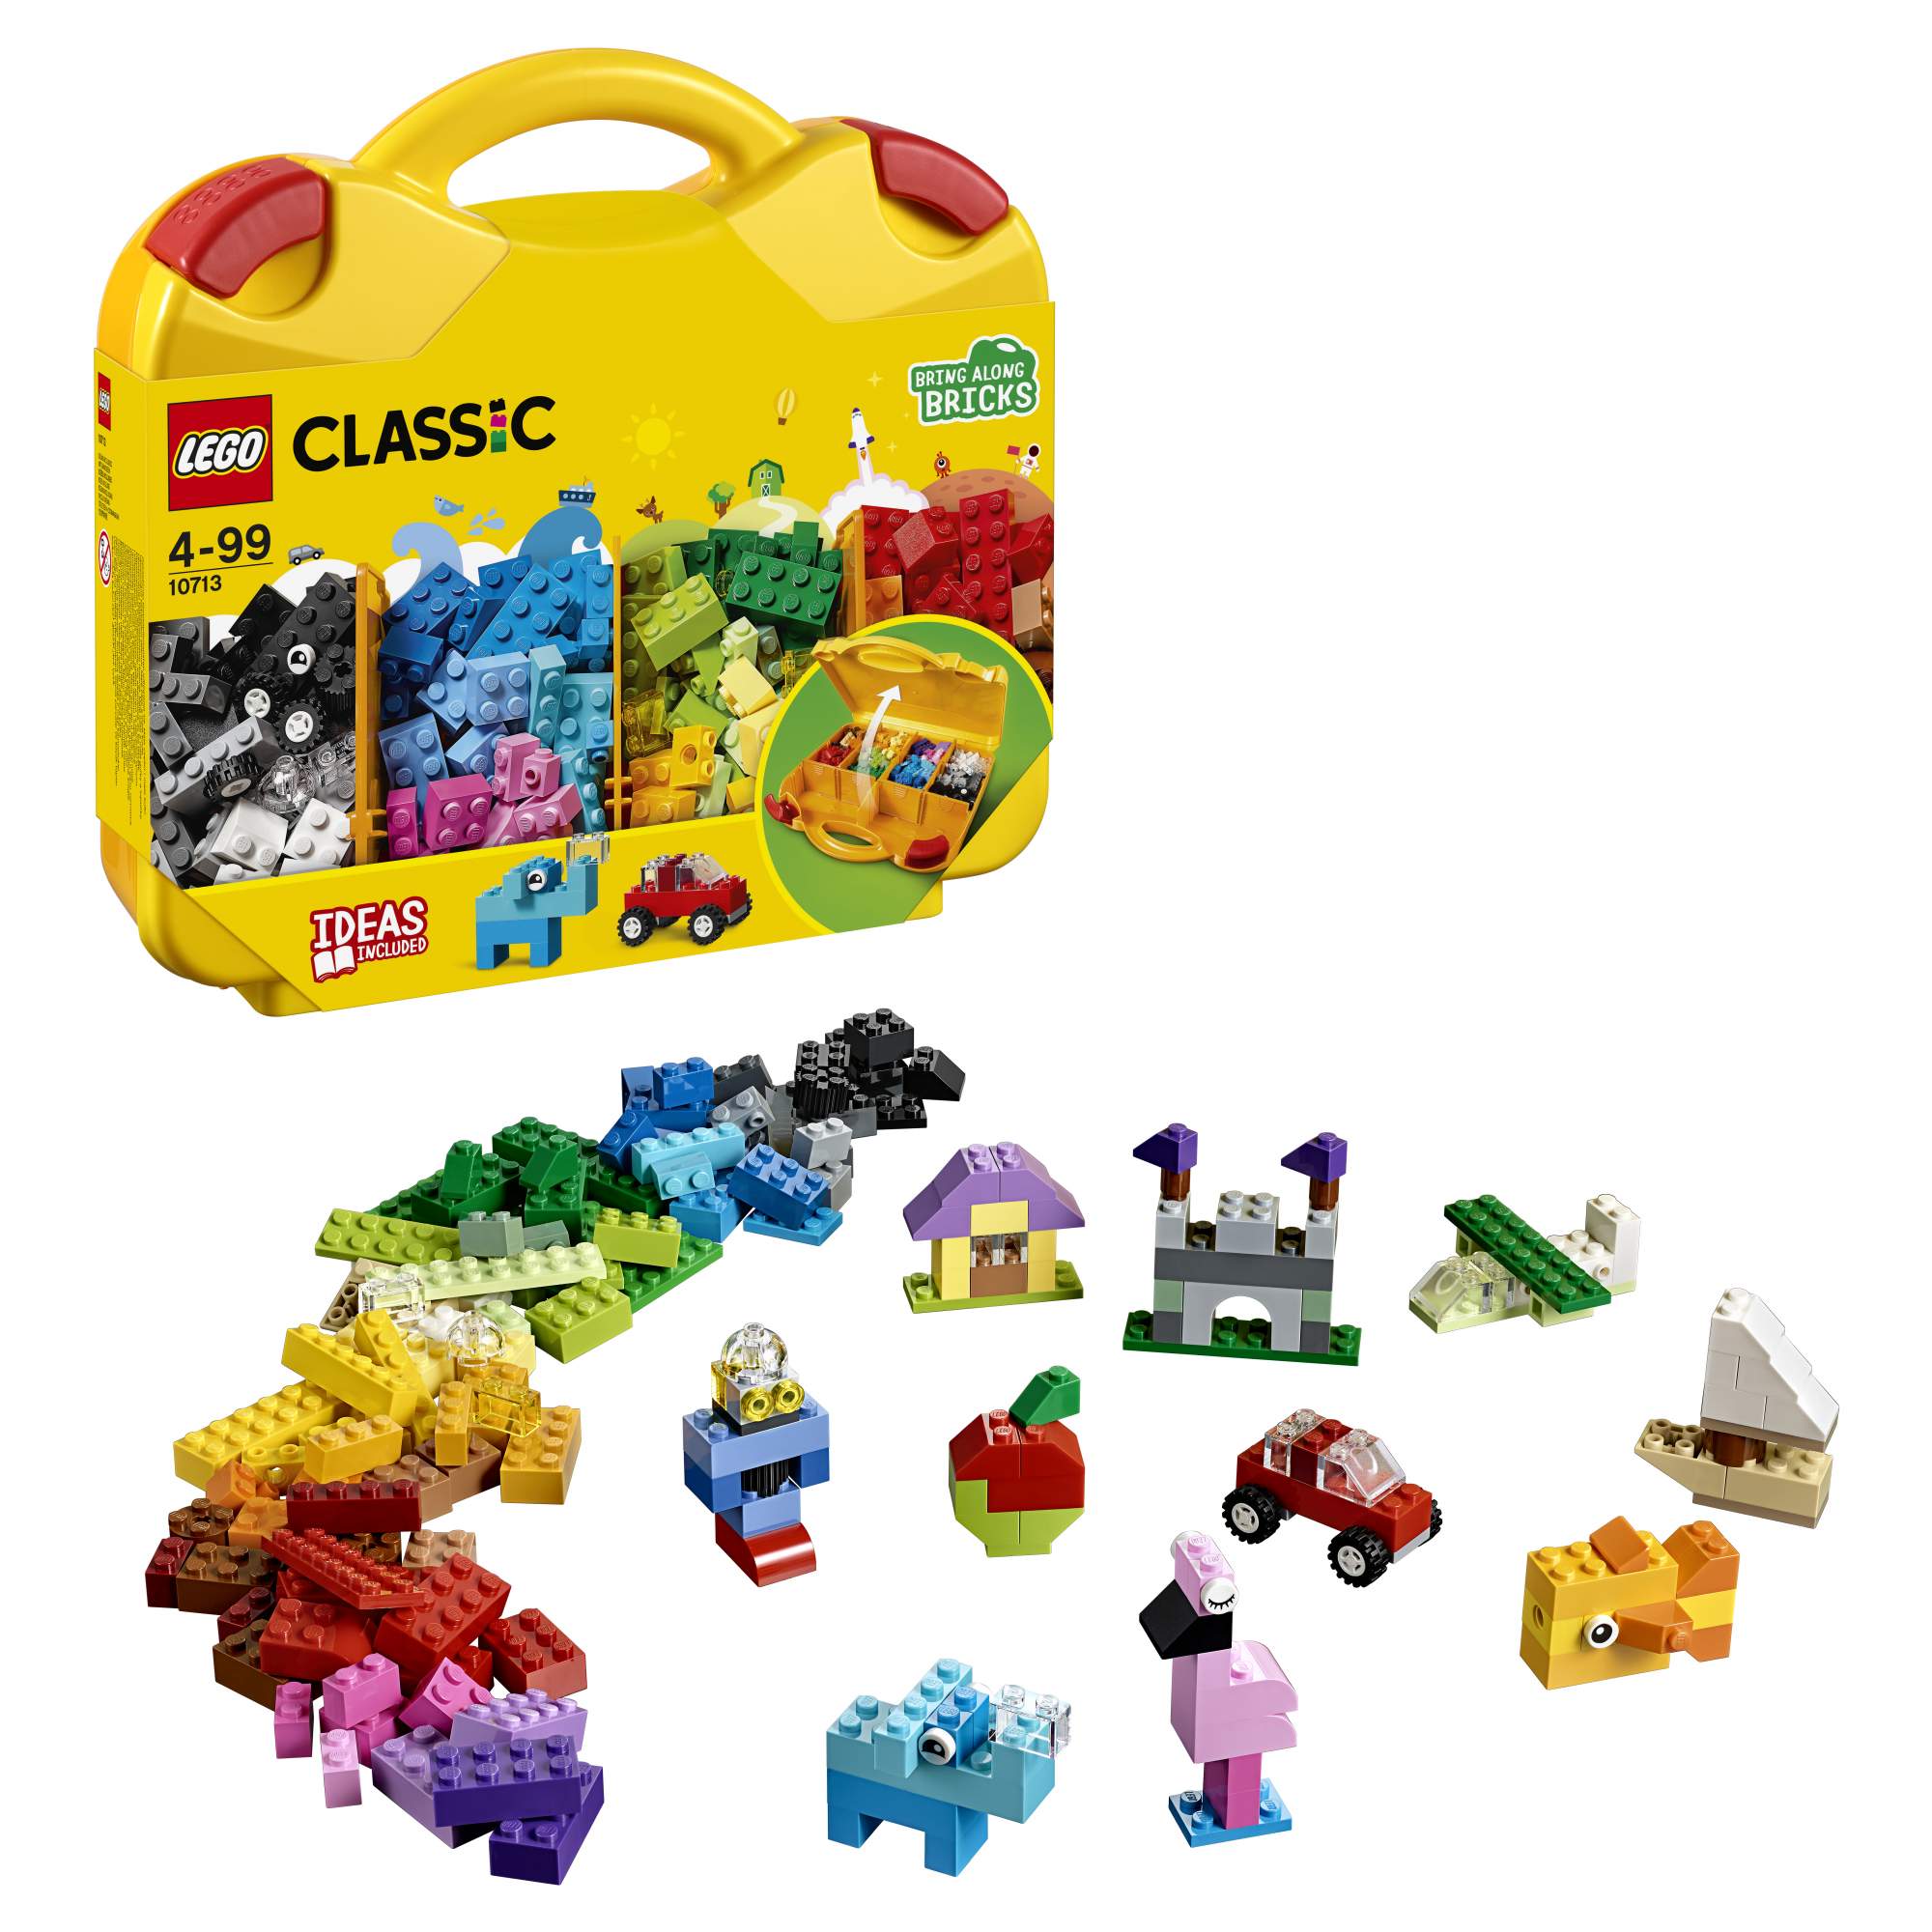 Купить конструктор LEGO Classic Чемоданчик для творчества и конструирования (10713), цены на Мегамаркет | Артикул: 100023250925